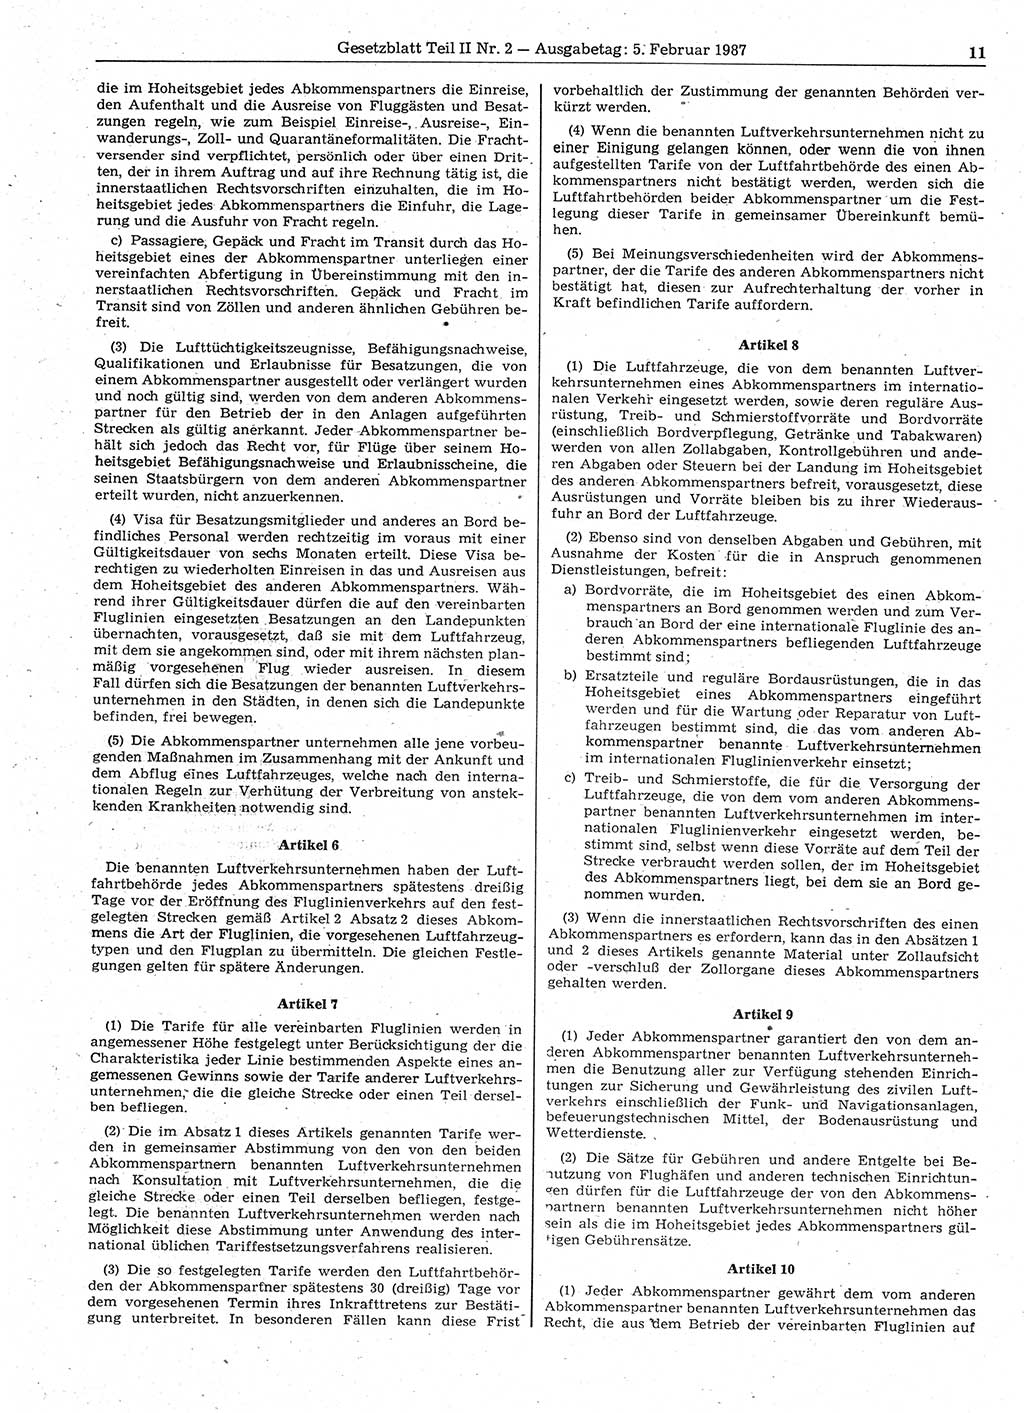 Gesetzblatt (GBl.) der Deutschen Demokratischen Republik (DDR) Teil ⅠⅠ 1987, Seite 11 (GBl. DDR ⅠⅠ 1987, S. 11)